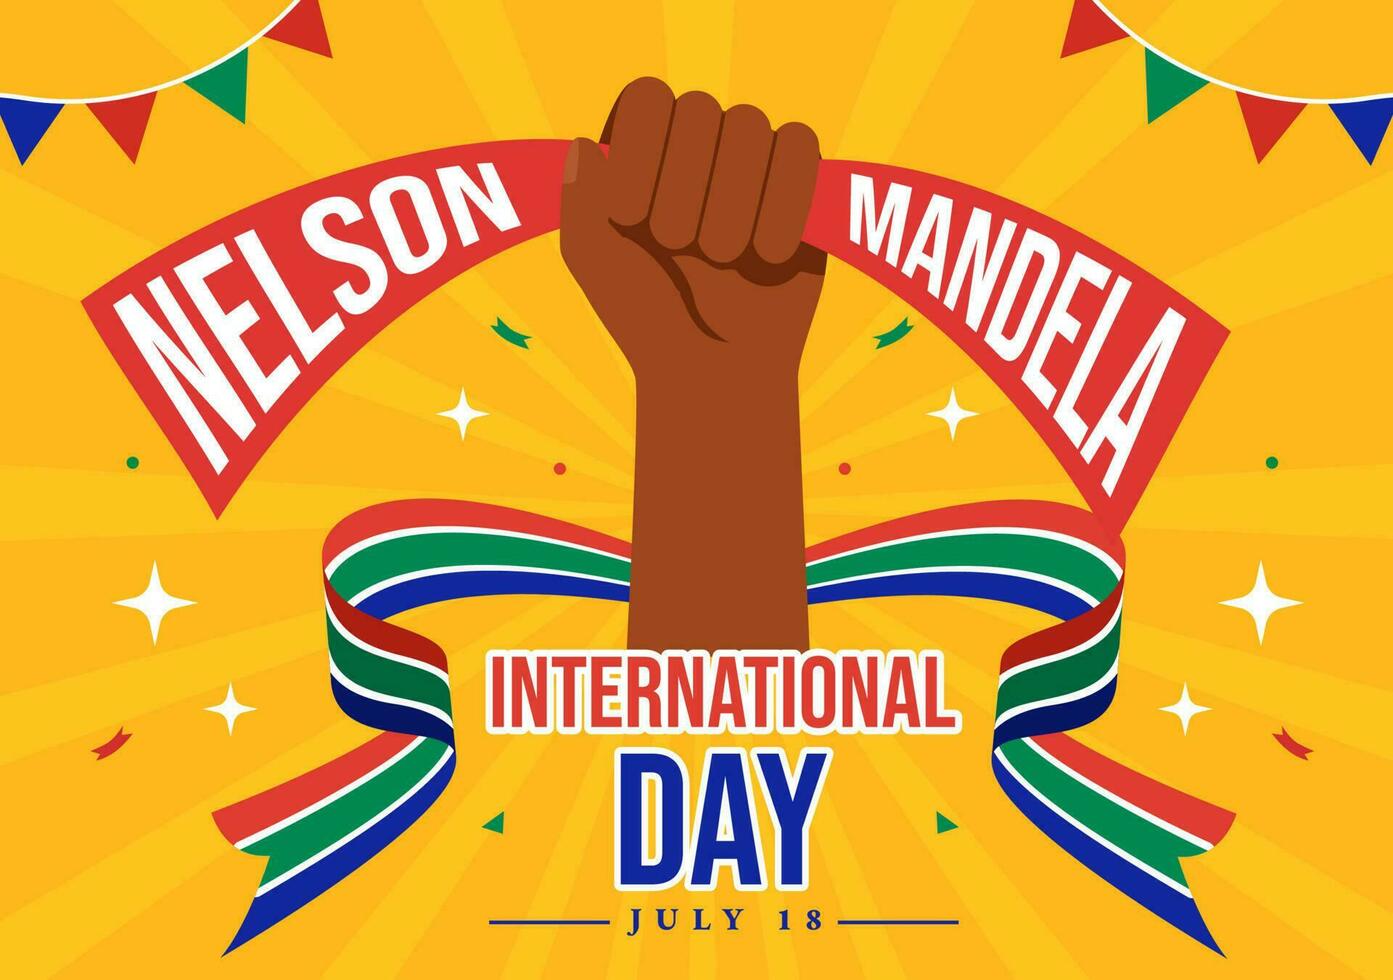 Lycklig nelson mandela internationell dag vektor illustration på 18 juli med söder afrika flagga i platt tecknad serie hand dragen landning sida mallar